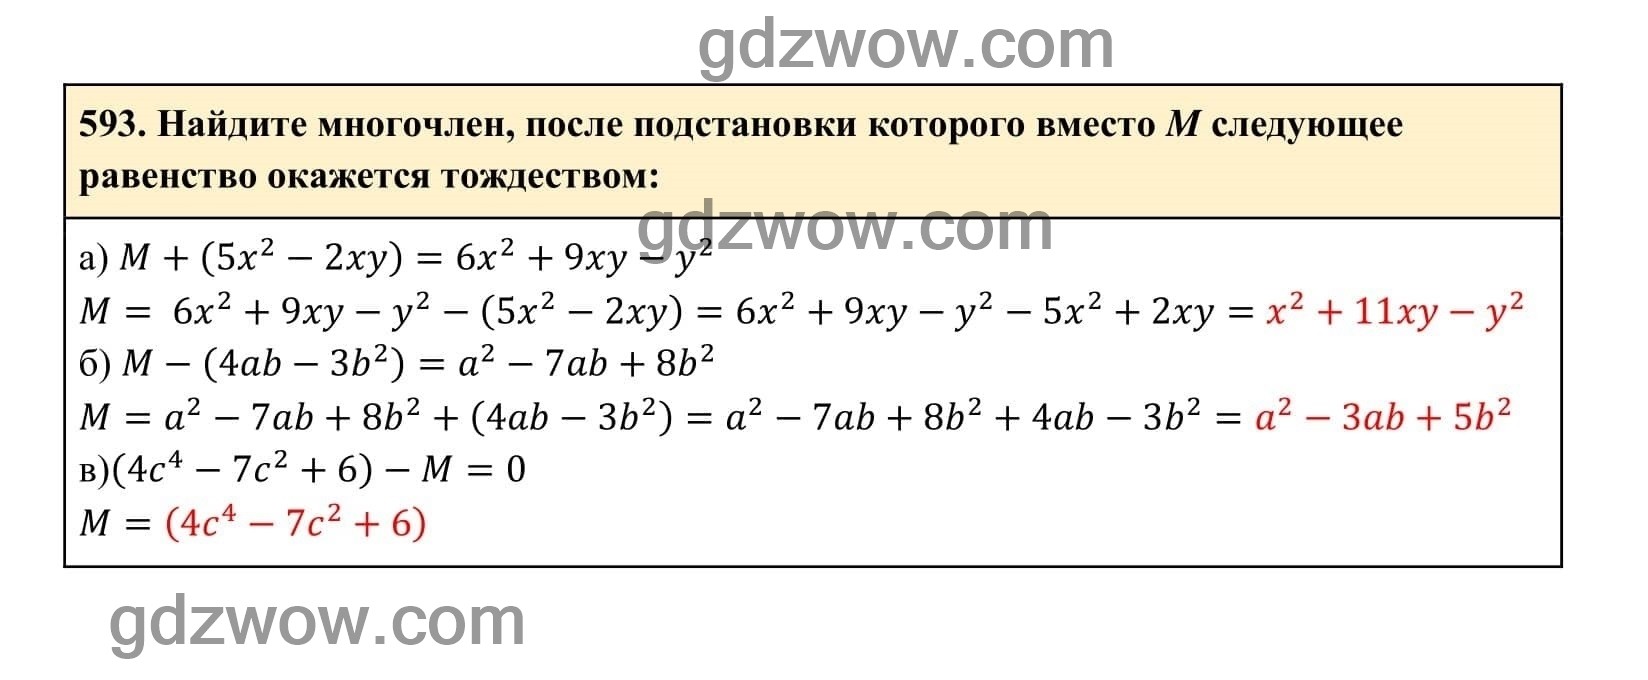 Упражнение 593 - ГДЗ по Алгебре 7 класс Учебник Макарычев (решебник) - GDZwow